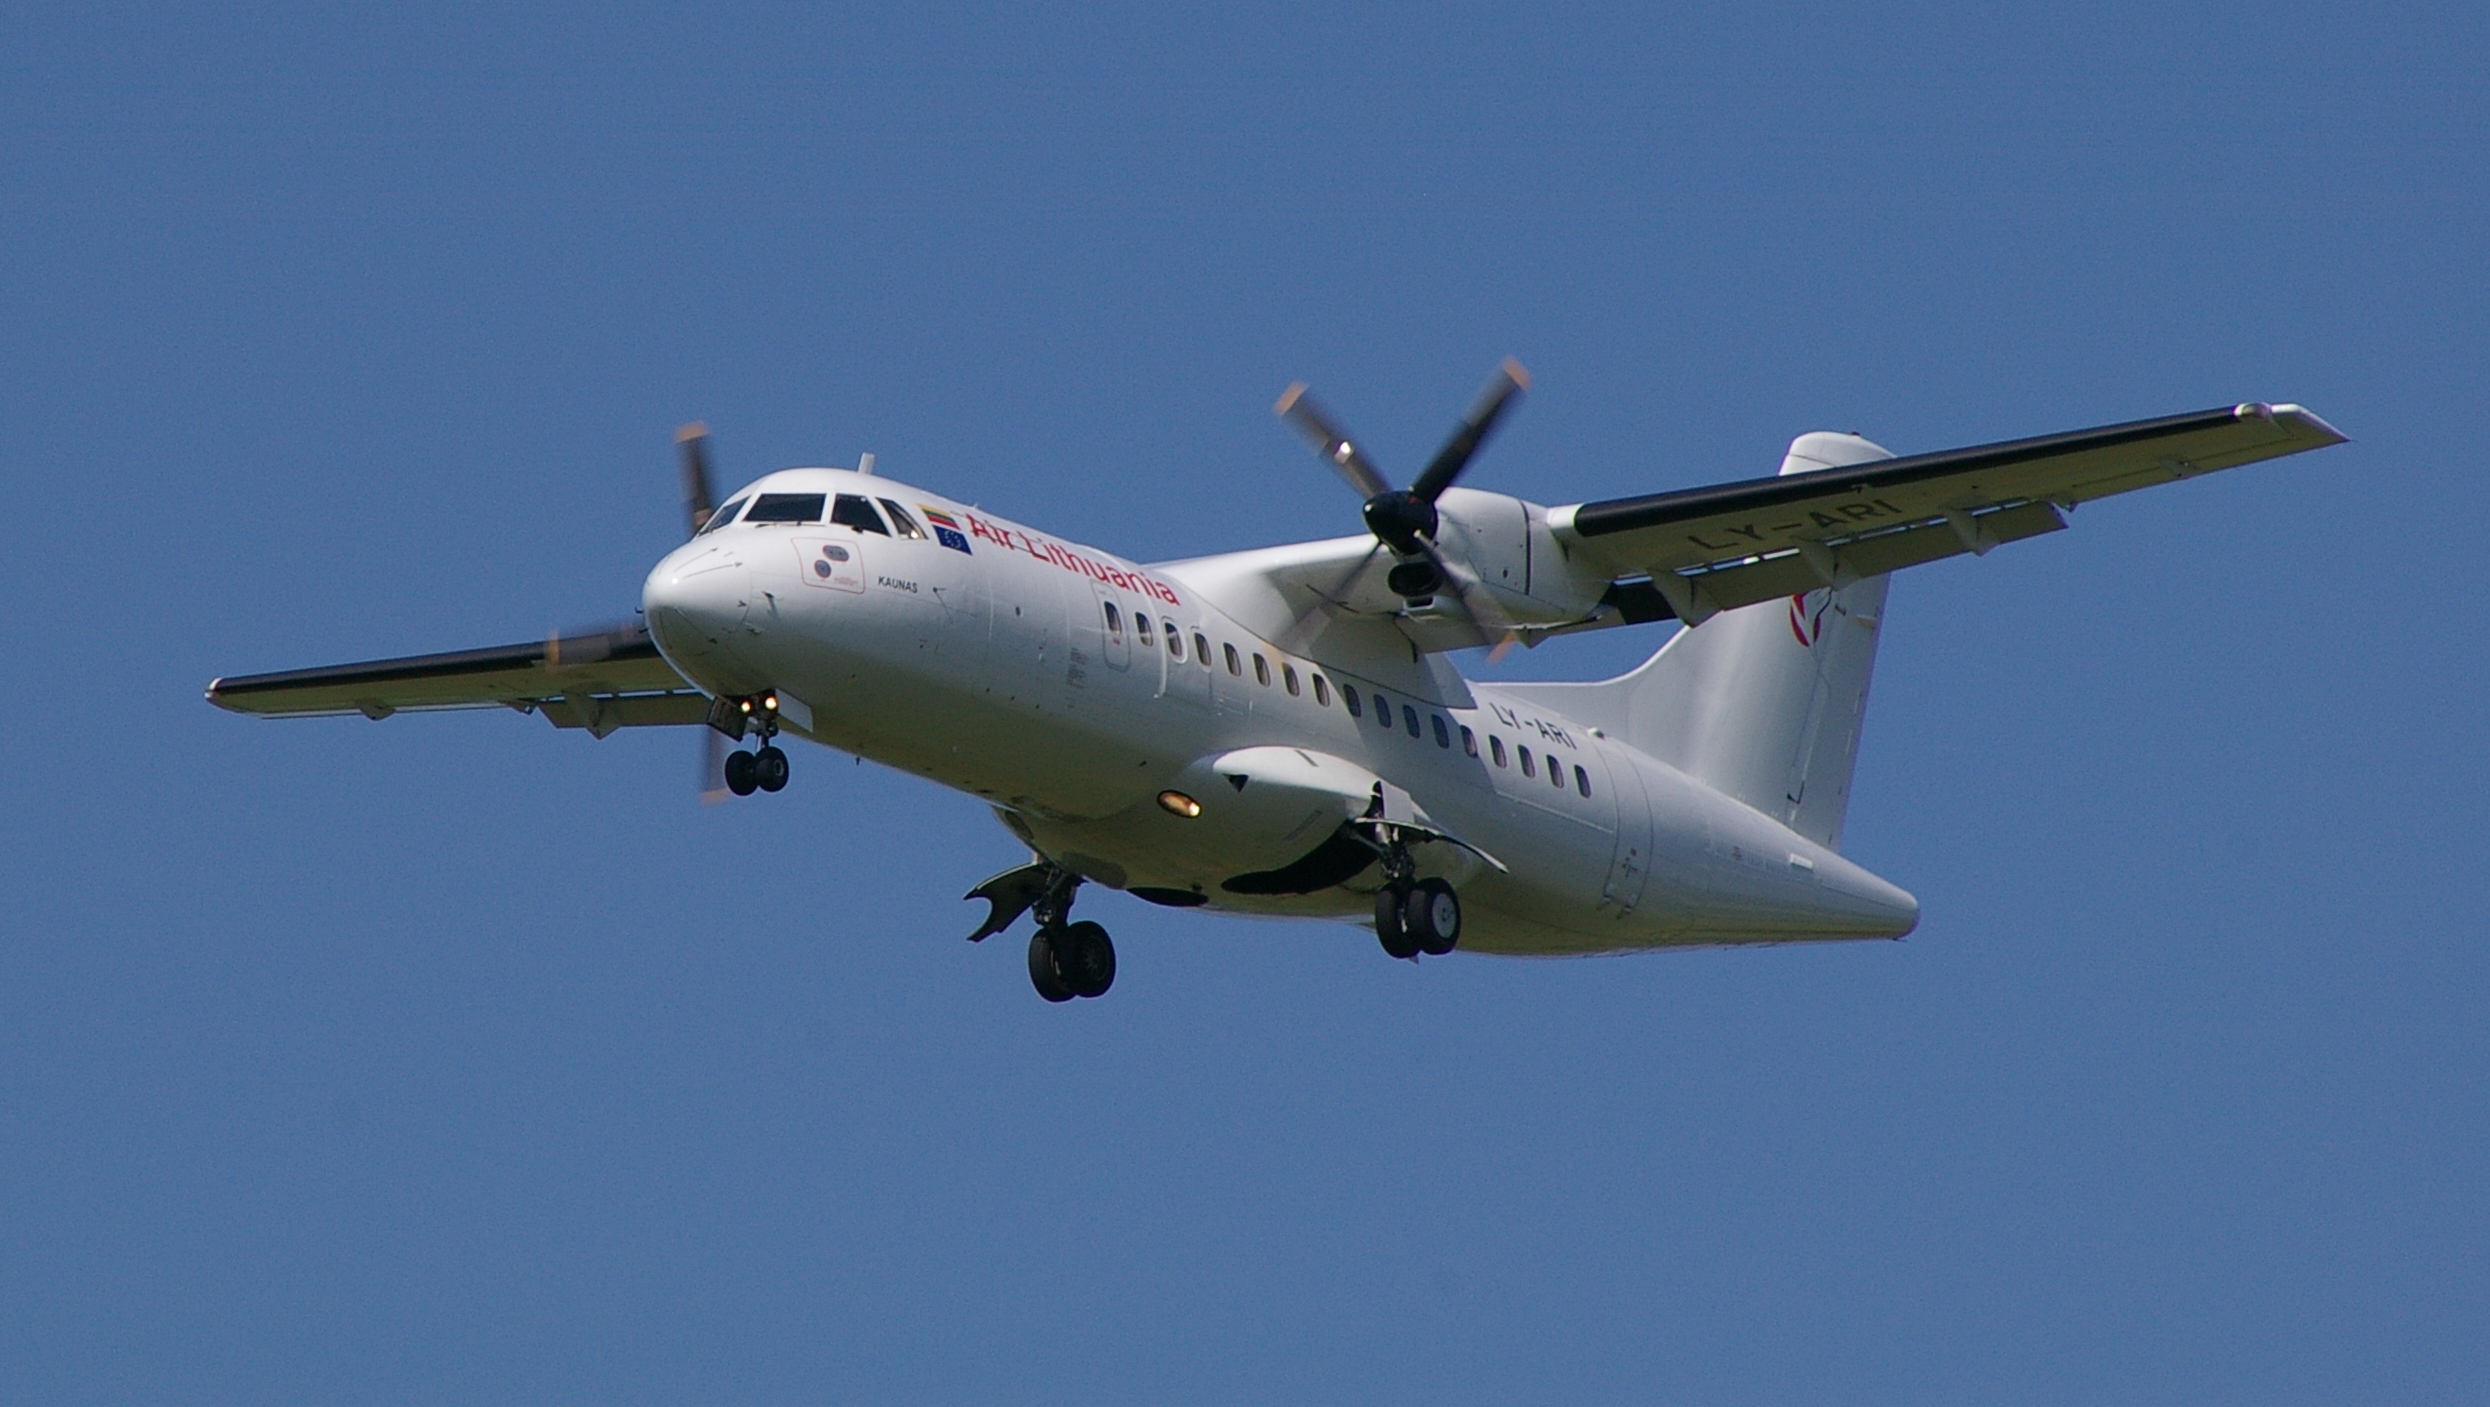 ATR ATR-42 next